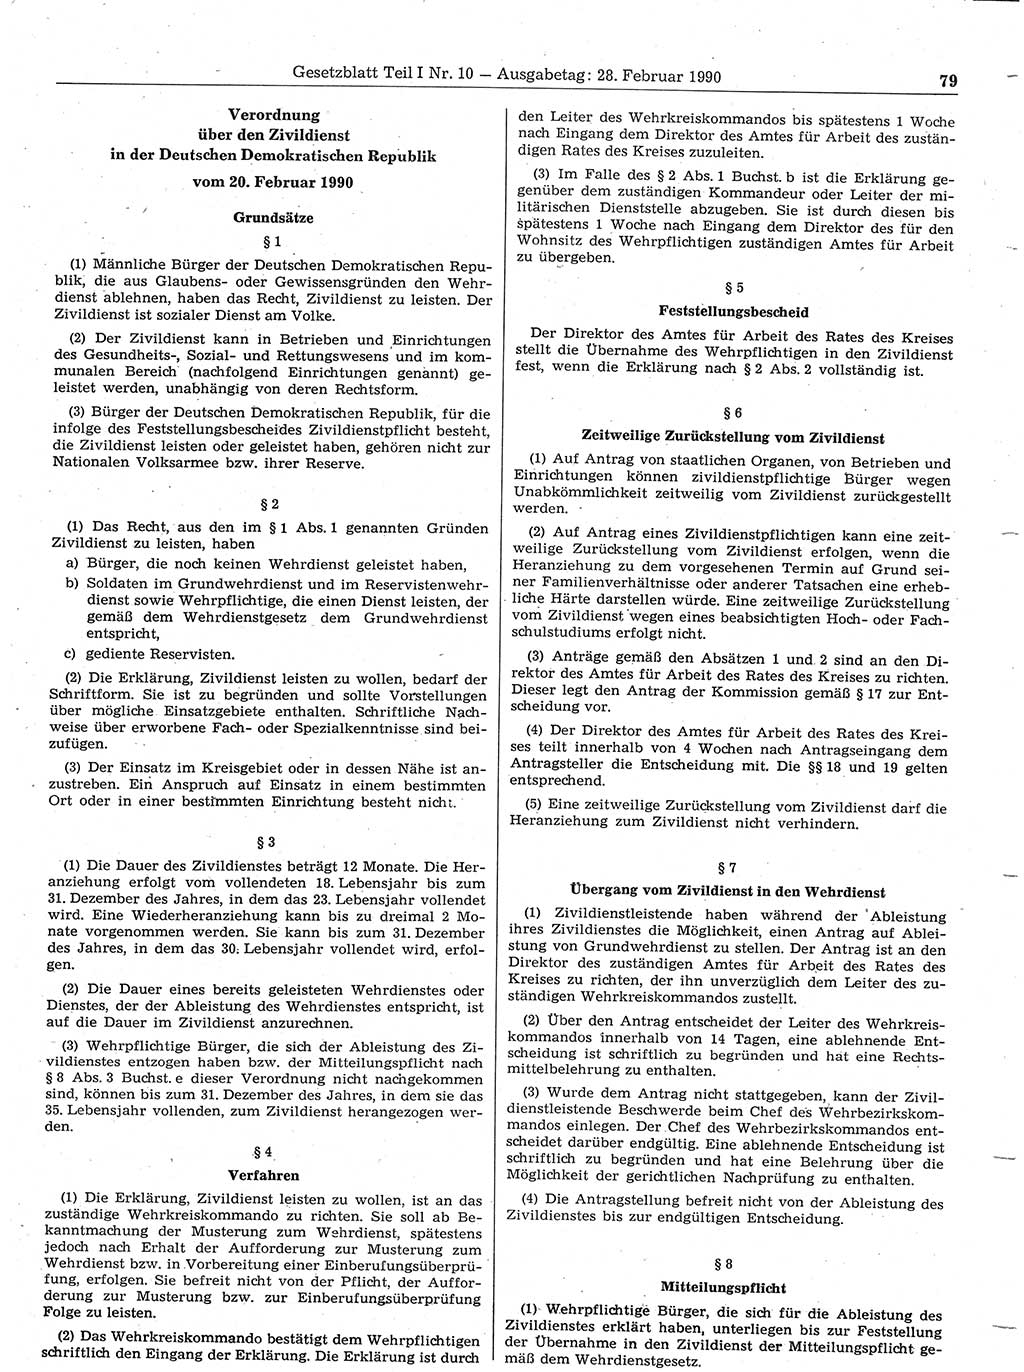 Gesetzblatt (GBl.) der Deutschen Demokratischen Republik (DDR) Teil Ⅰ 1990, Seite 79 (GBl. DDR Ⅰ 1990, S. 79)